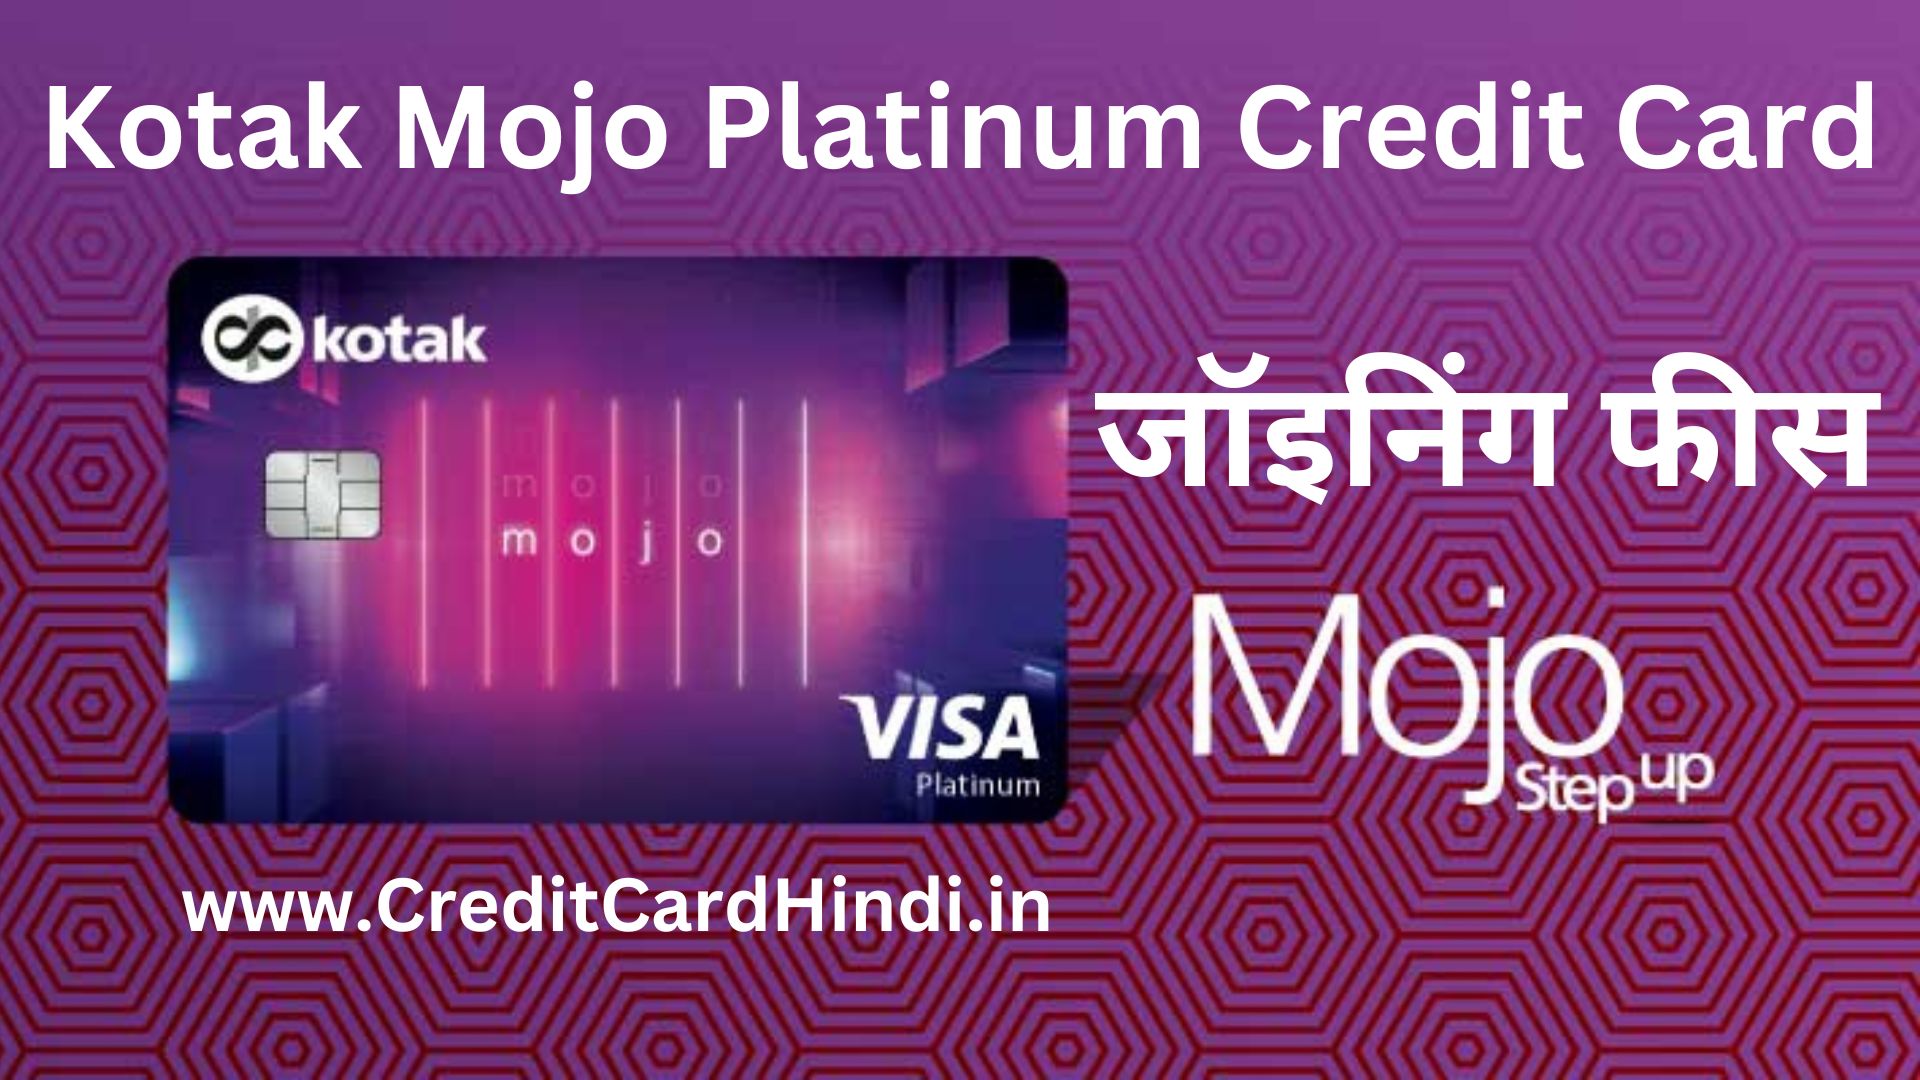 Kotak Mojo Platinum Credit Card Fees & Charges